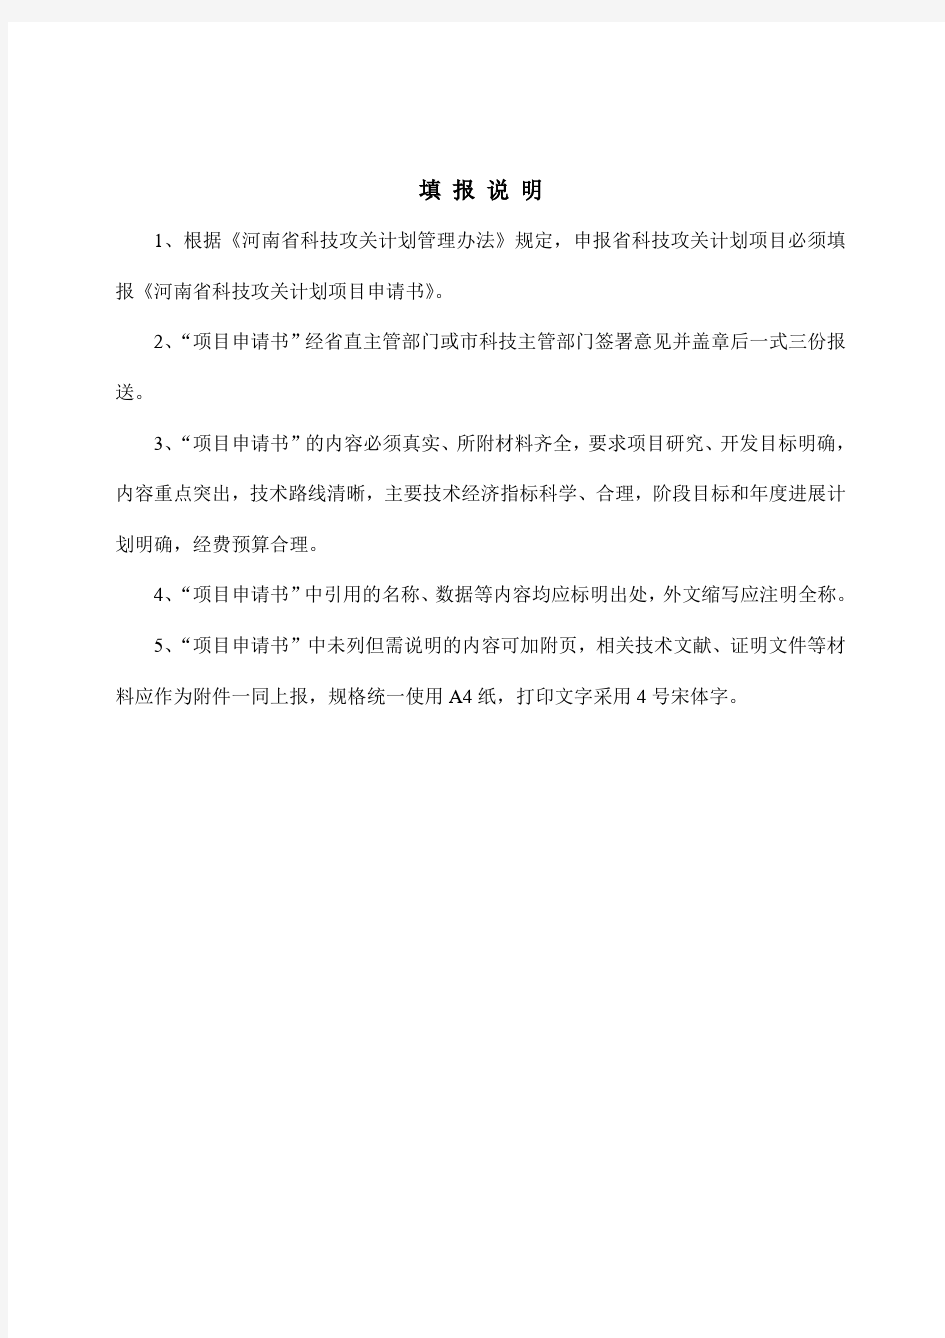 河南省科技攻关计划项目申请书